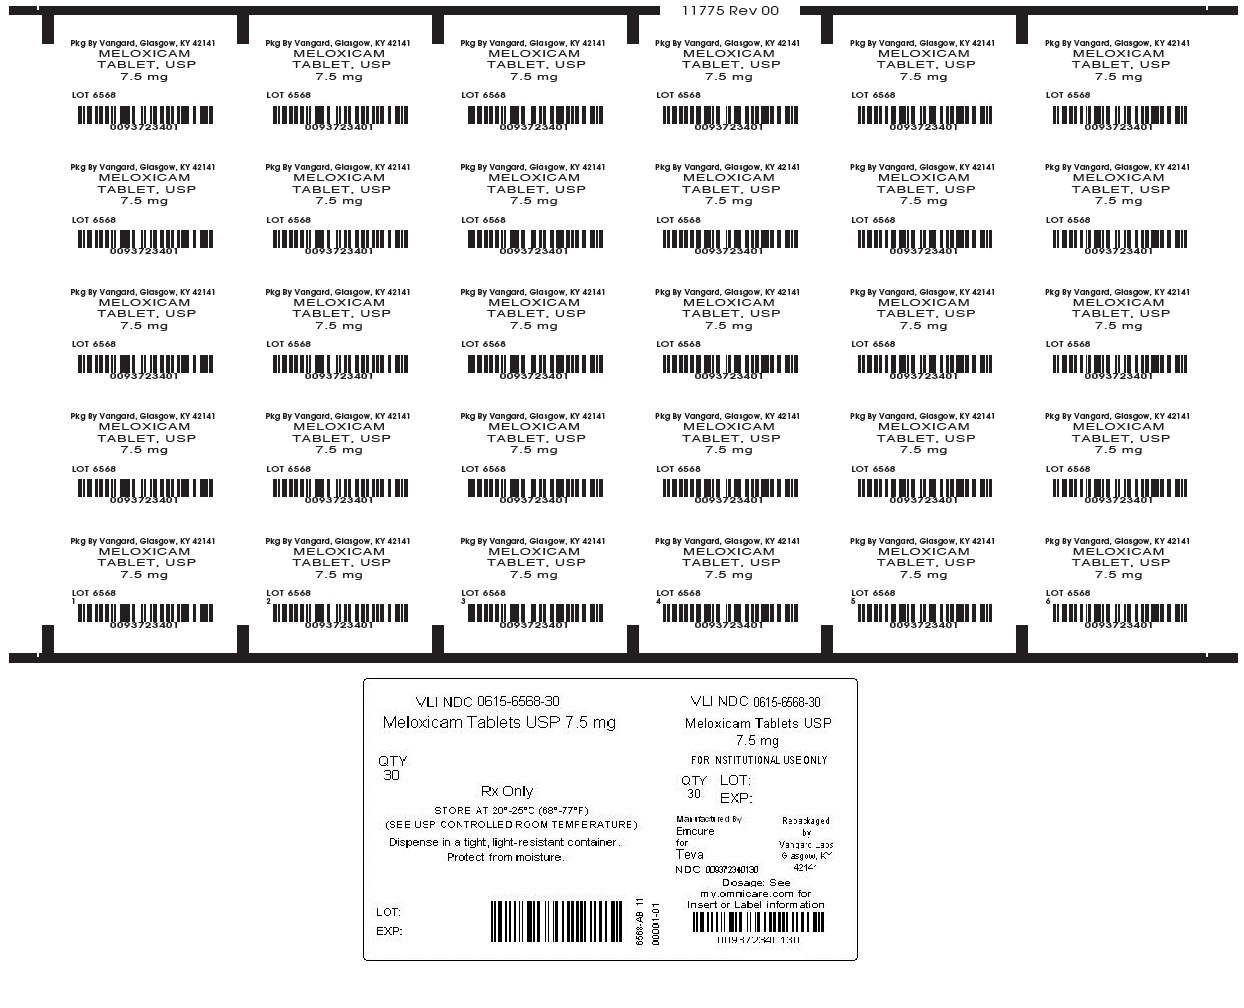 Meloxicam Tablet, USP 7.5mg unit-dose label